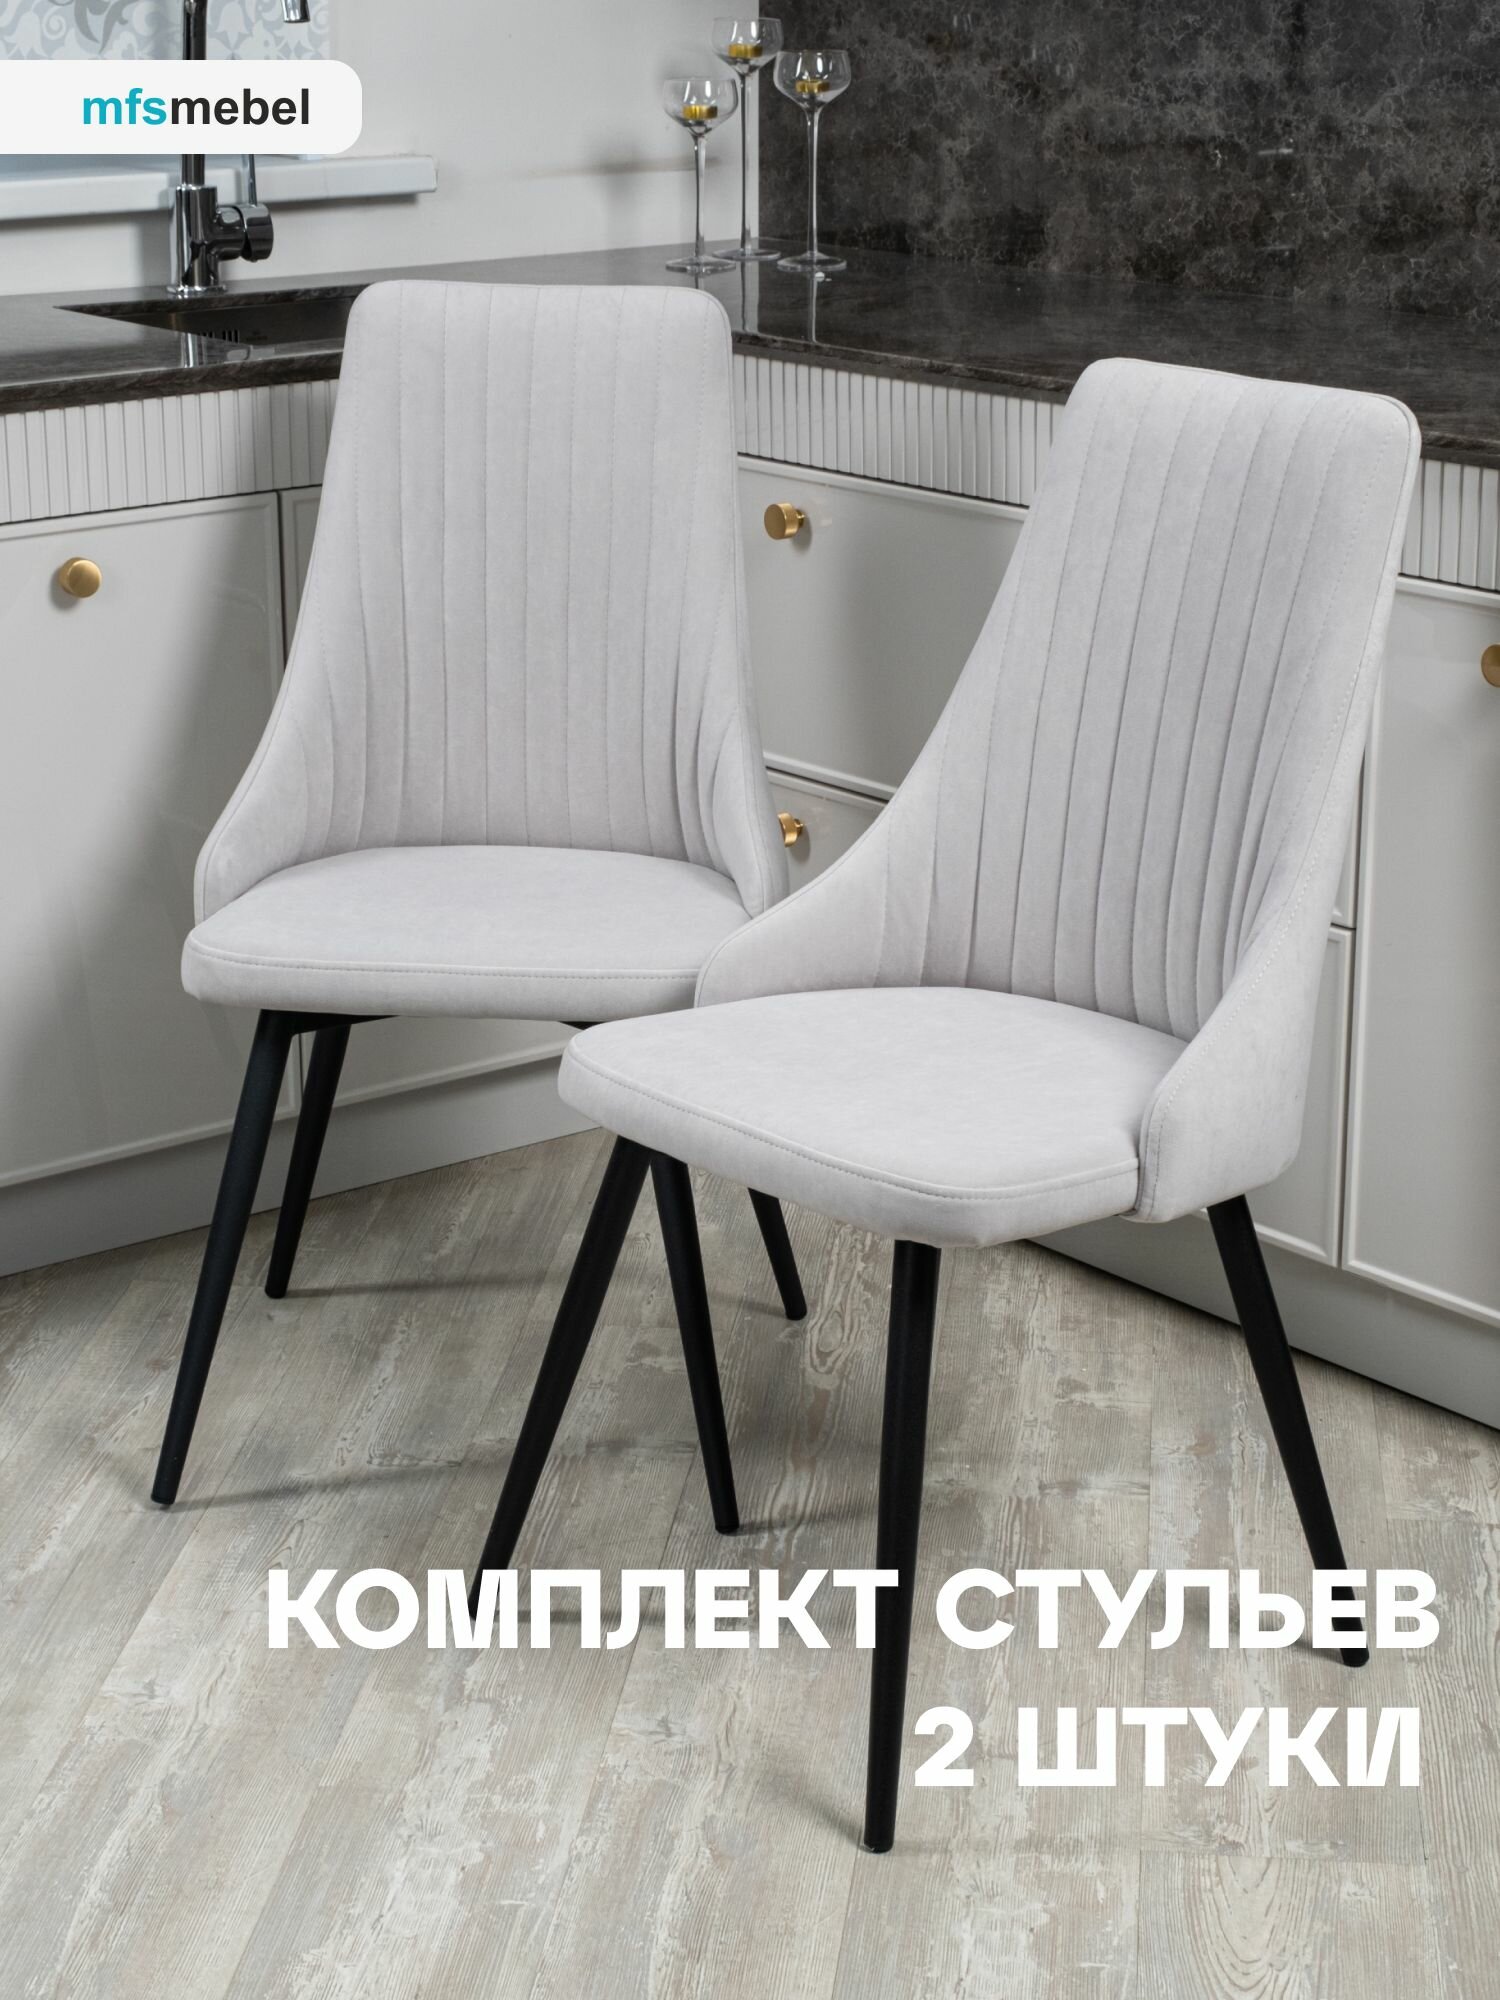 Комплект стульев для кухни и гостиной Руссо 2 шт, светло-серый